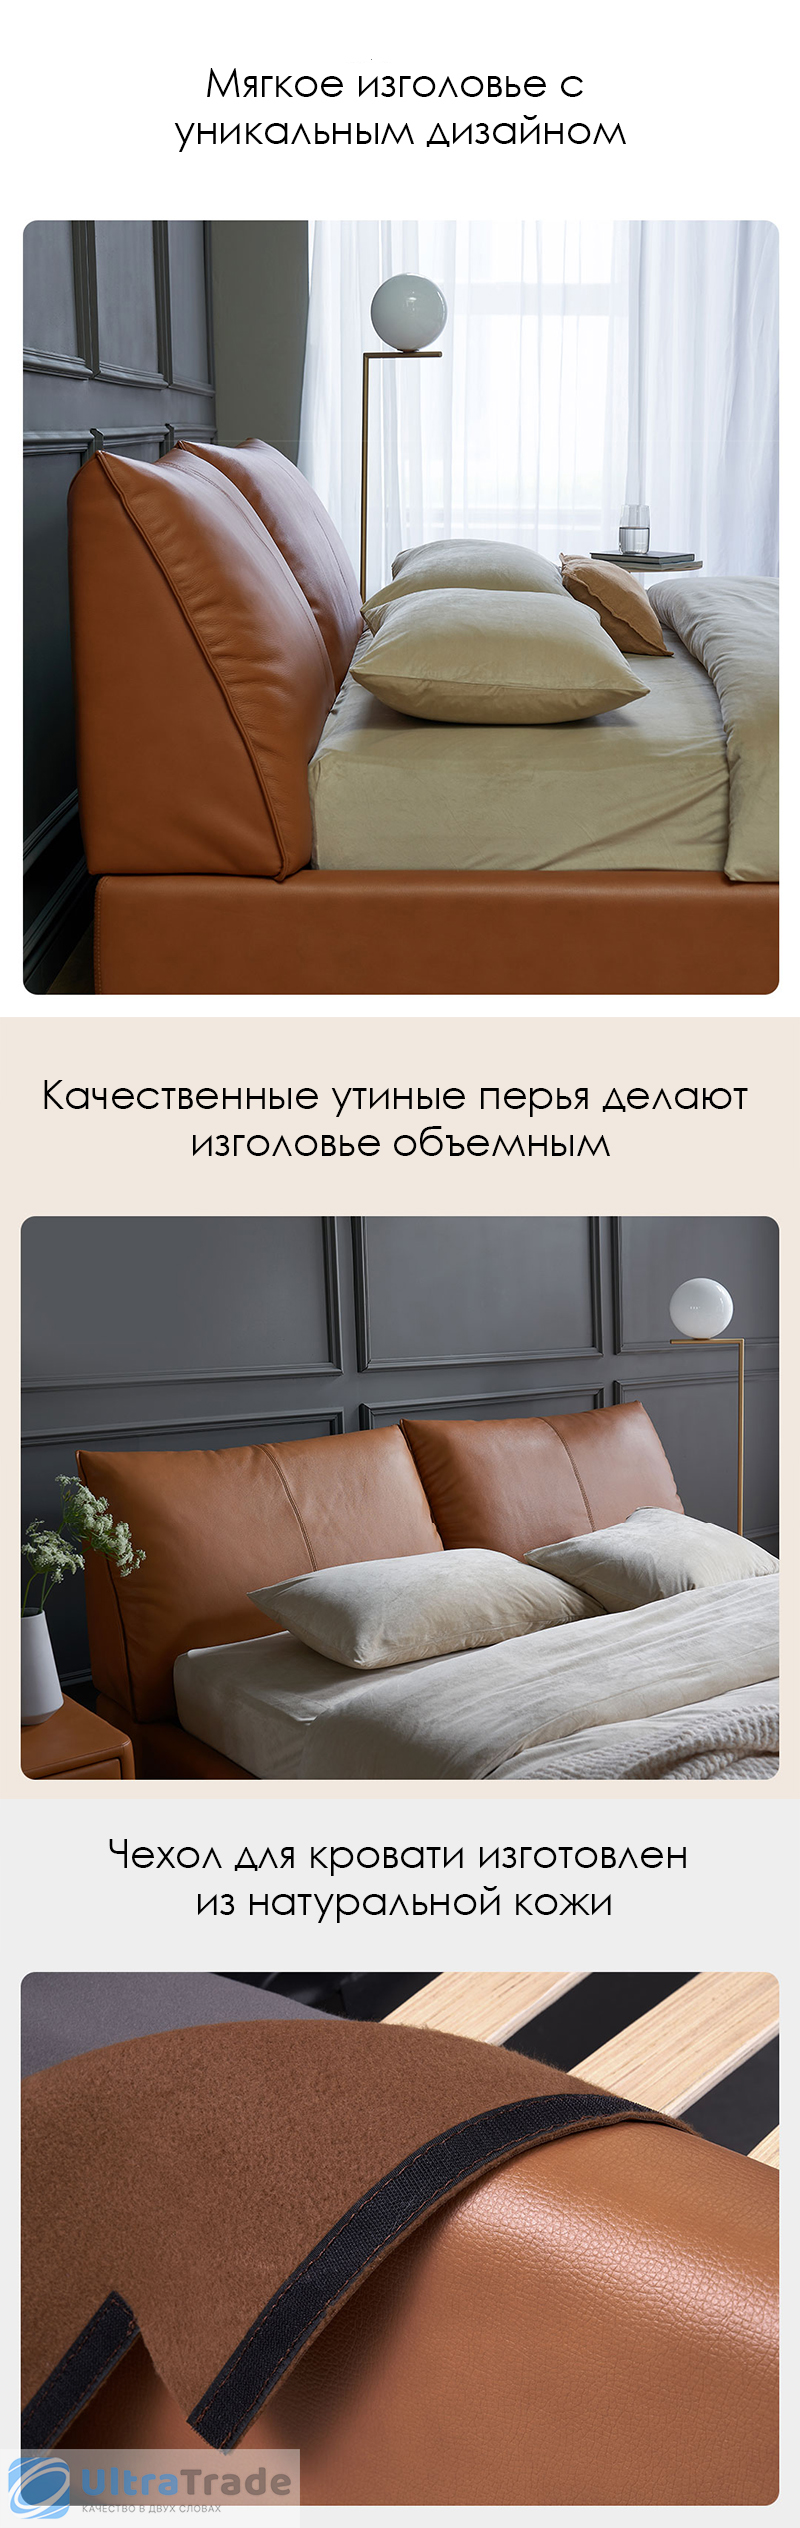 Двуспальная кровать с подъемным механизмом Xiaomi Yang Zi Look Soufflé Leather Storage Bed Set 1.5 m Orange (2 тумбочки в комплекте)